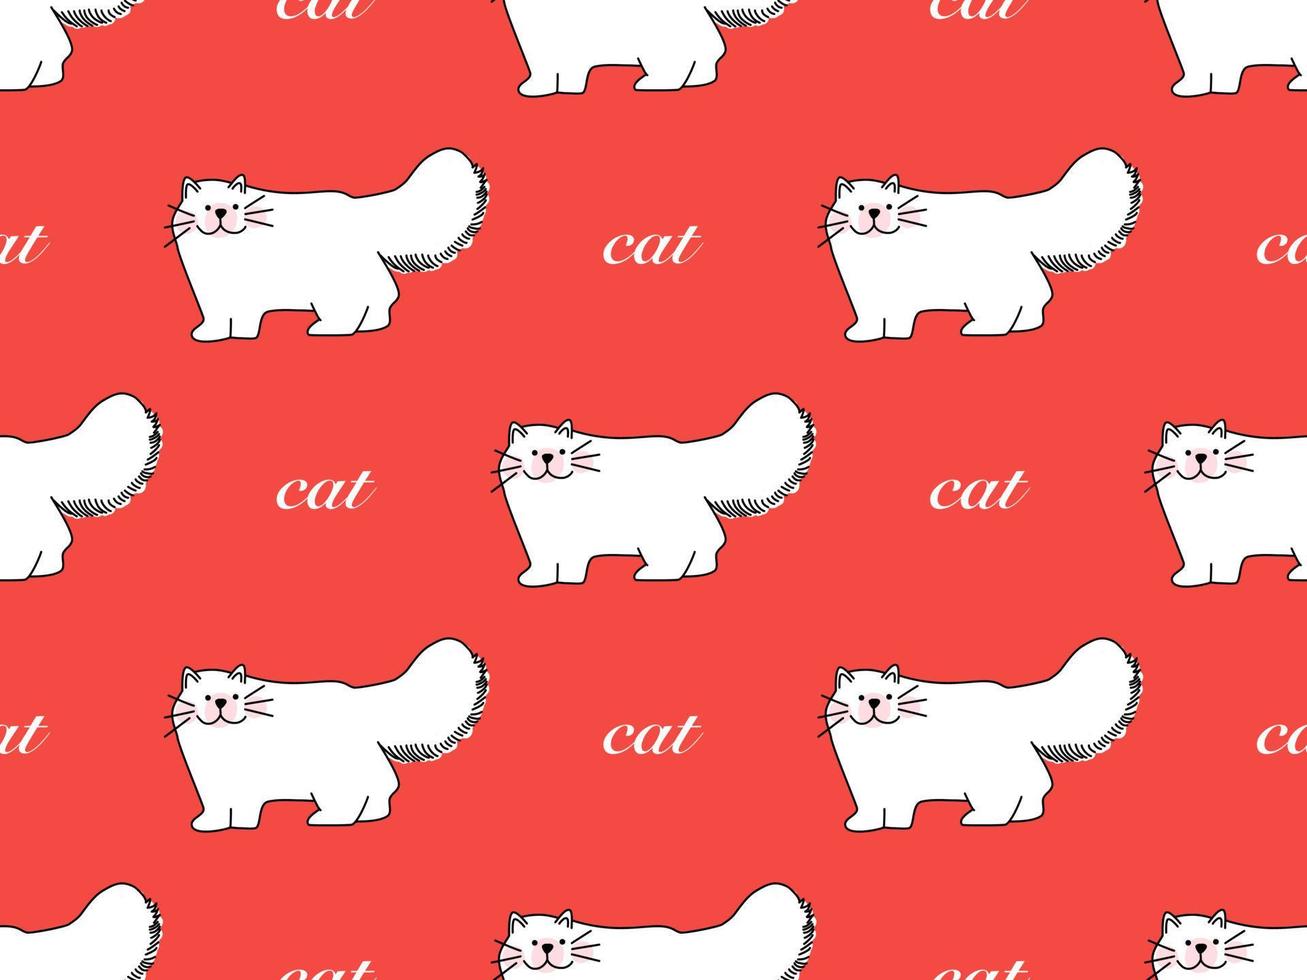 padrão perfeito de personagem de desenho animado de gato em fundo vermelho vetor